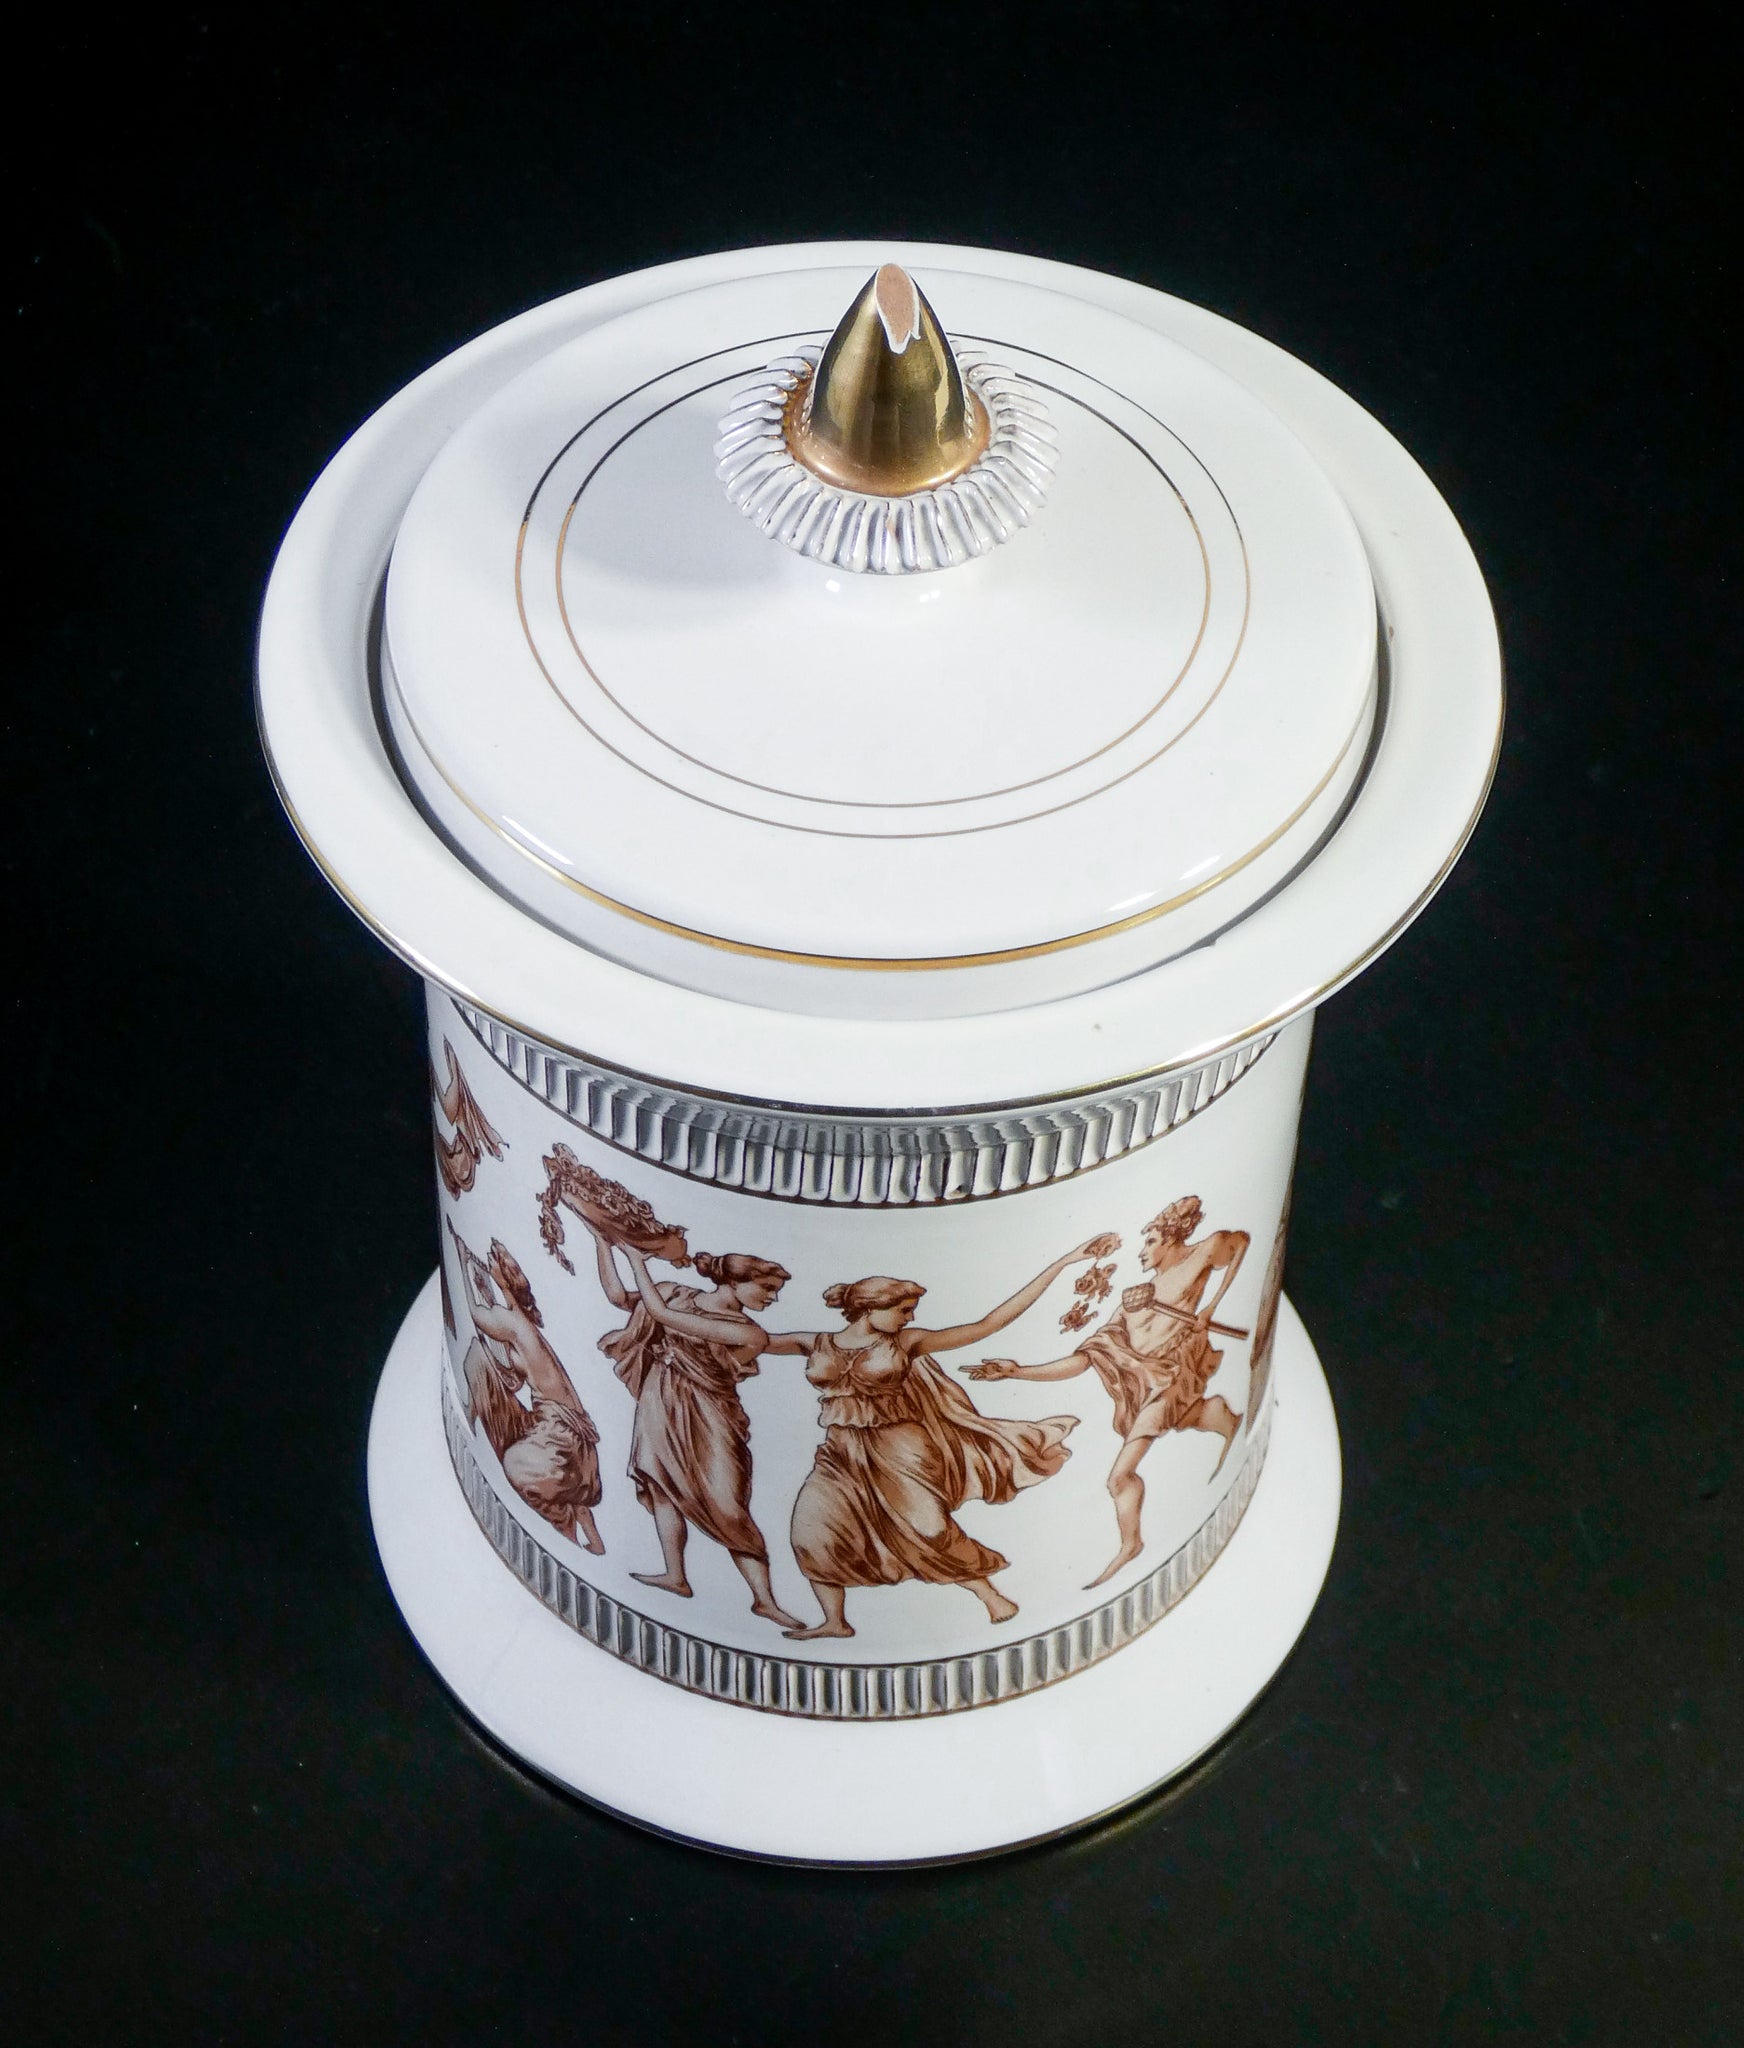 vaso ceramiche fiorentine hand made italy design vintage classico greco romano